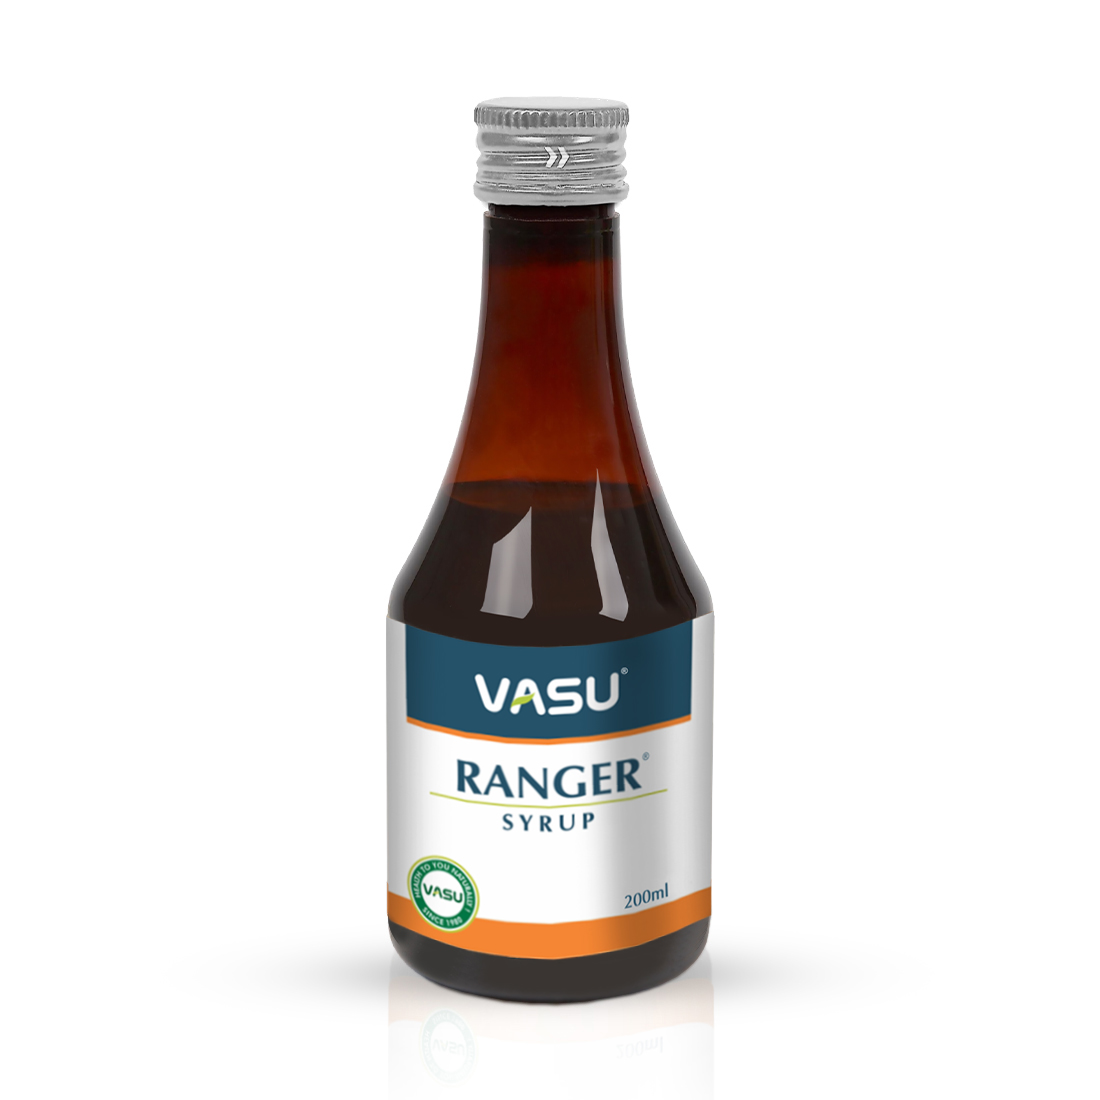 Buy Vasu Ranger Syrup at Best Price Online